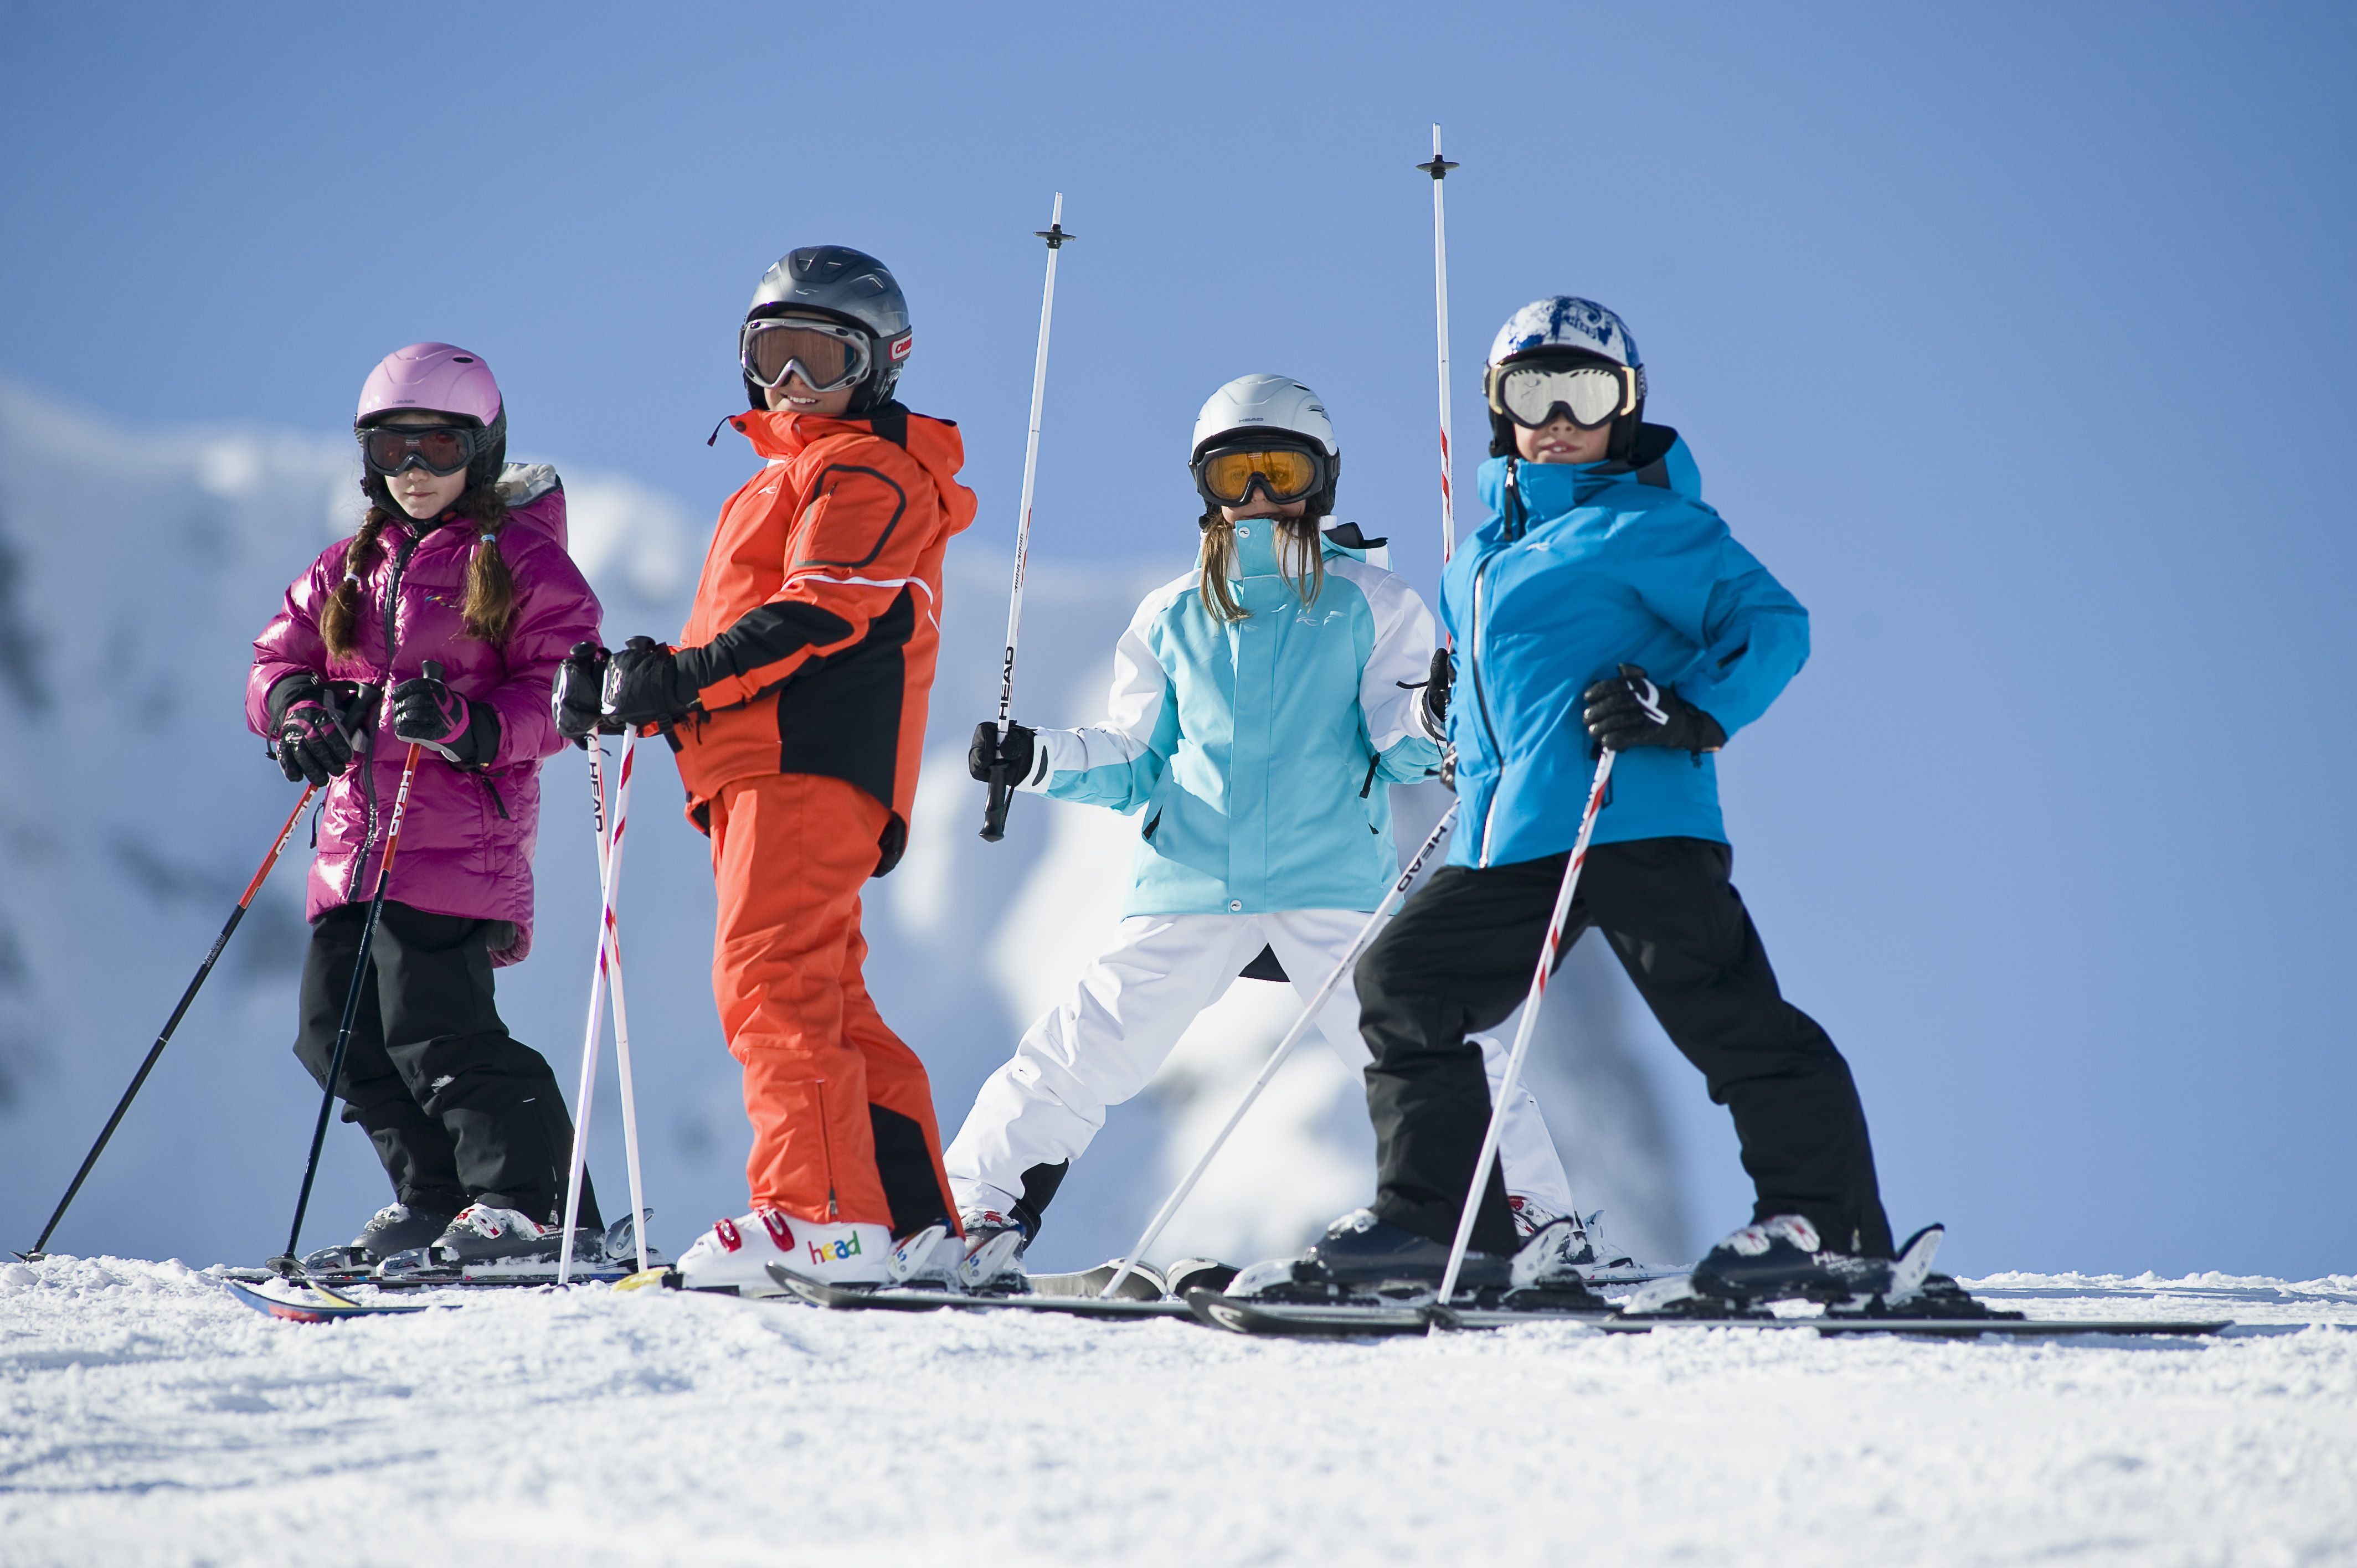 Покататься на горнолыжном курорте. Лыжный спорт дети. Дети горнолыжники. Катание на лыжах. Горнолыжный спорт.